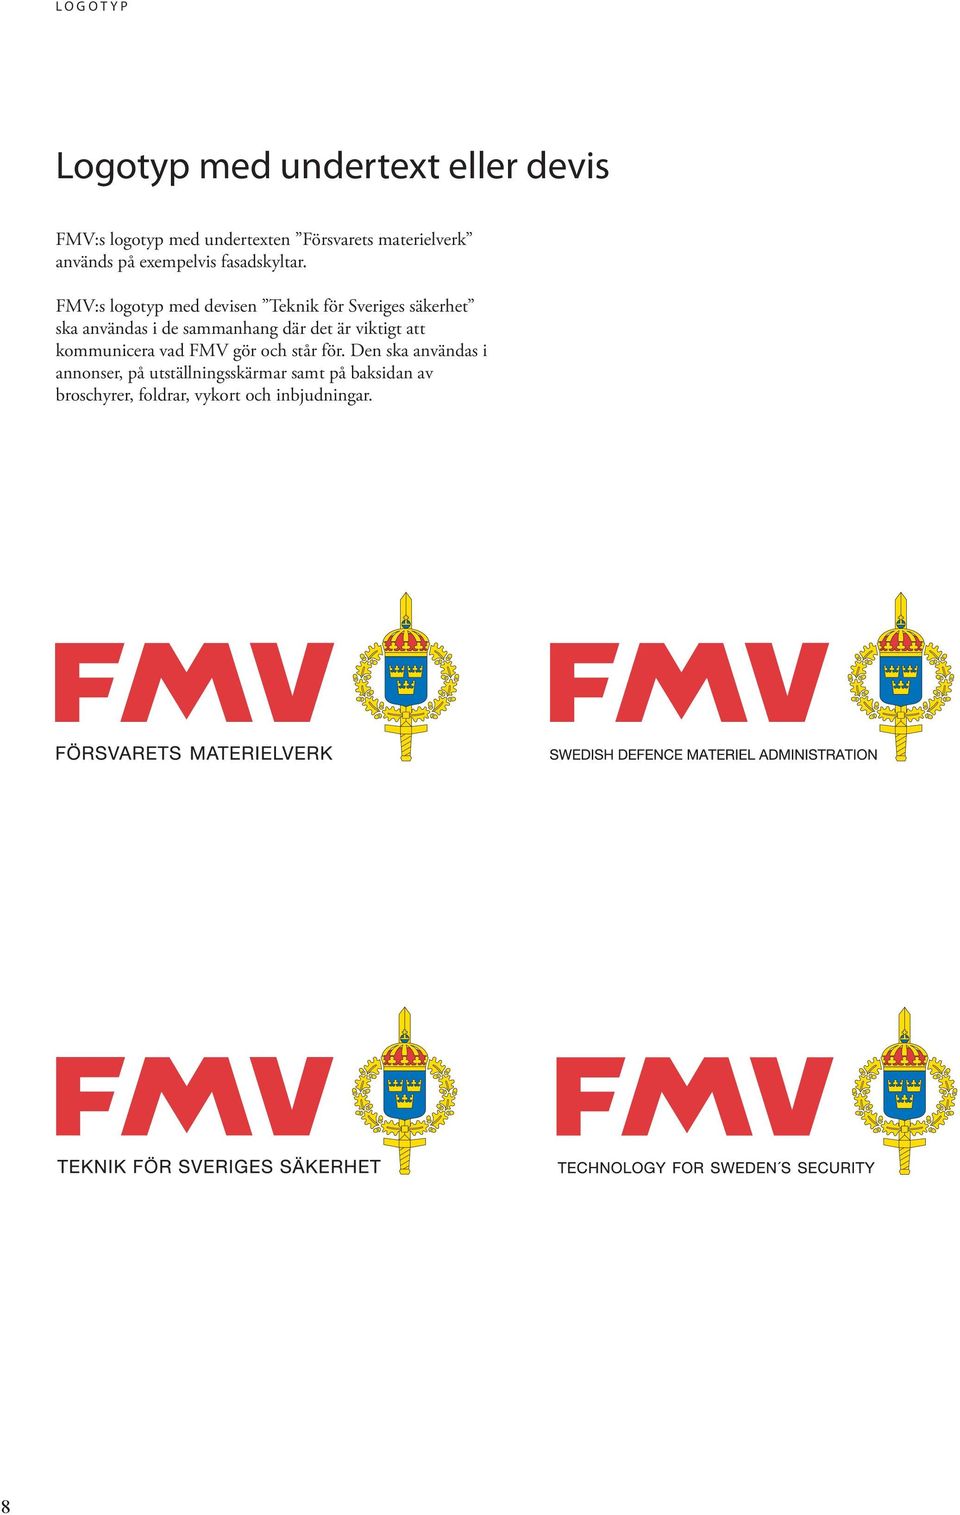 FMV:s logotyp med devisen Teknik för Sveriges säkerhet ska användas i de sammanhang där det är